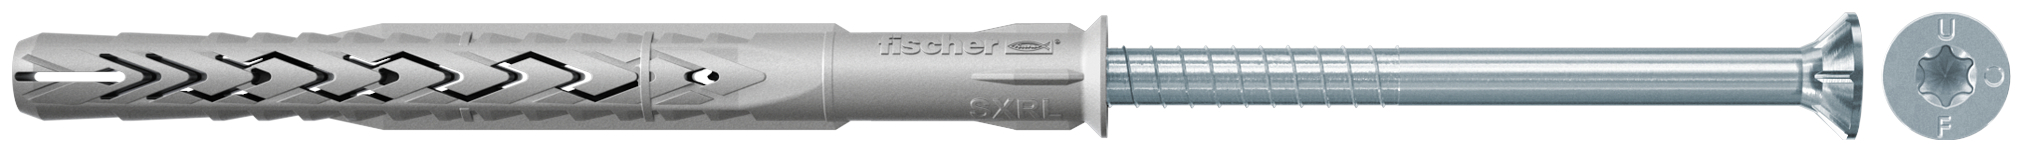 fischer Tasselli prolungati SXRL 10X180 T (1 Pz.) Tassello prolungato in nylon con marcatura CE con vite premontata T.S.P. impronta torx fie2370